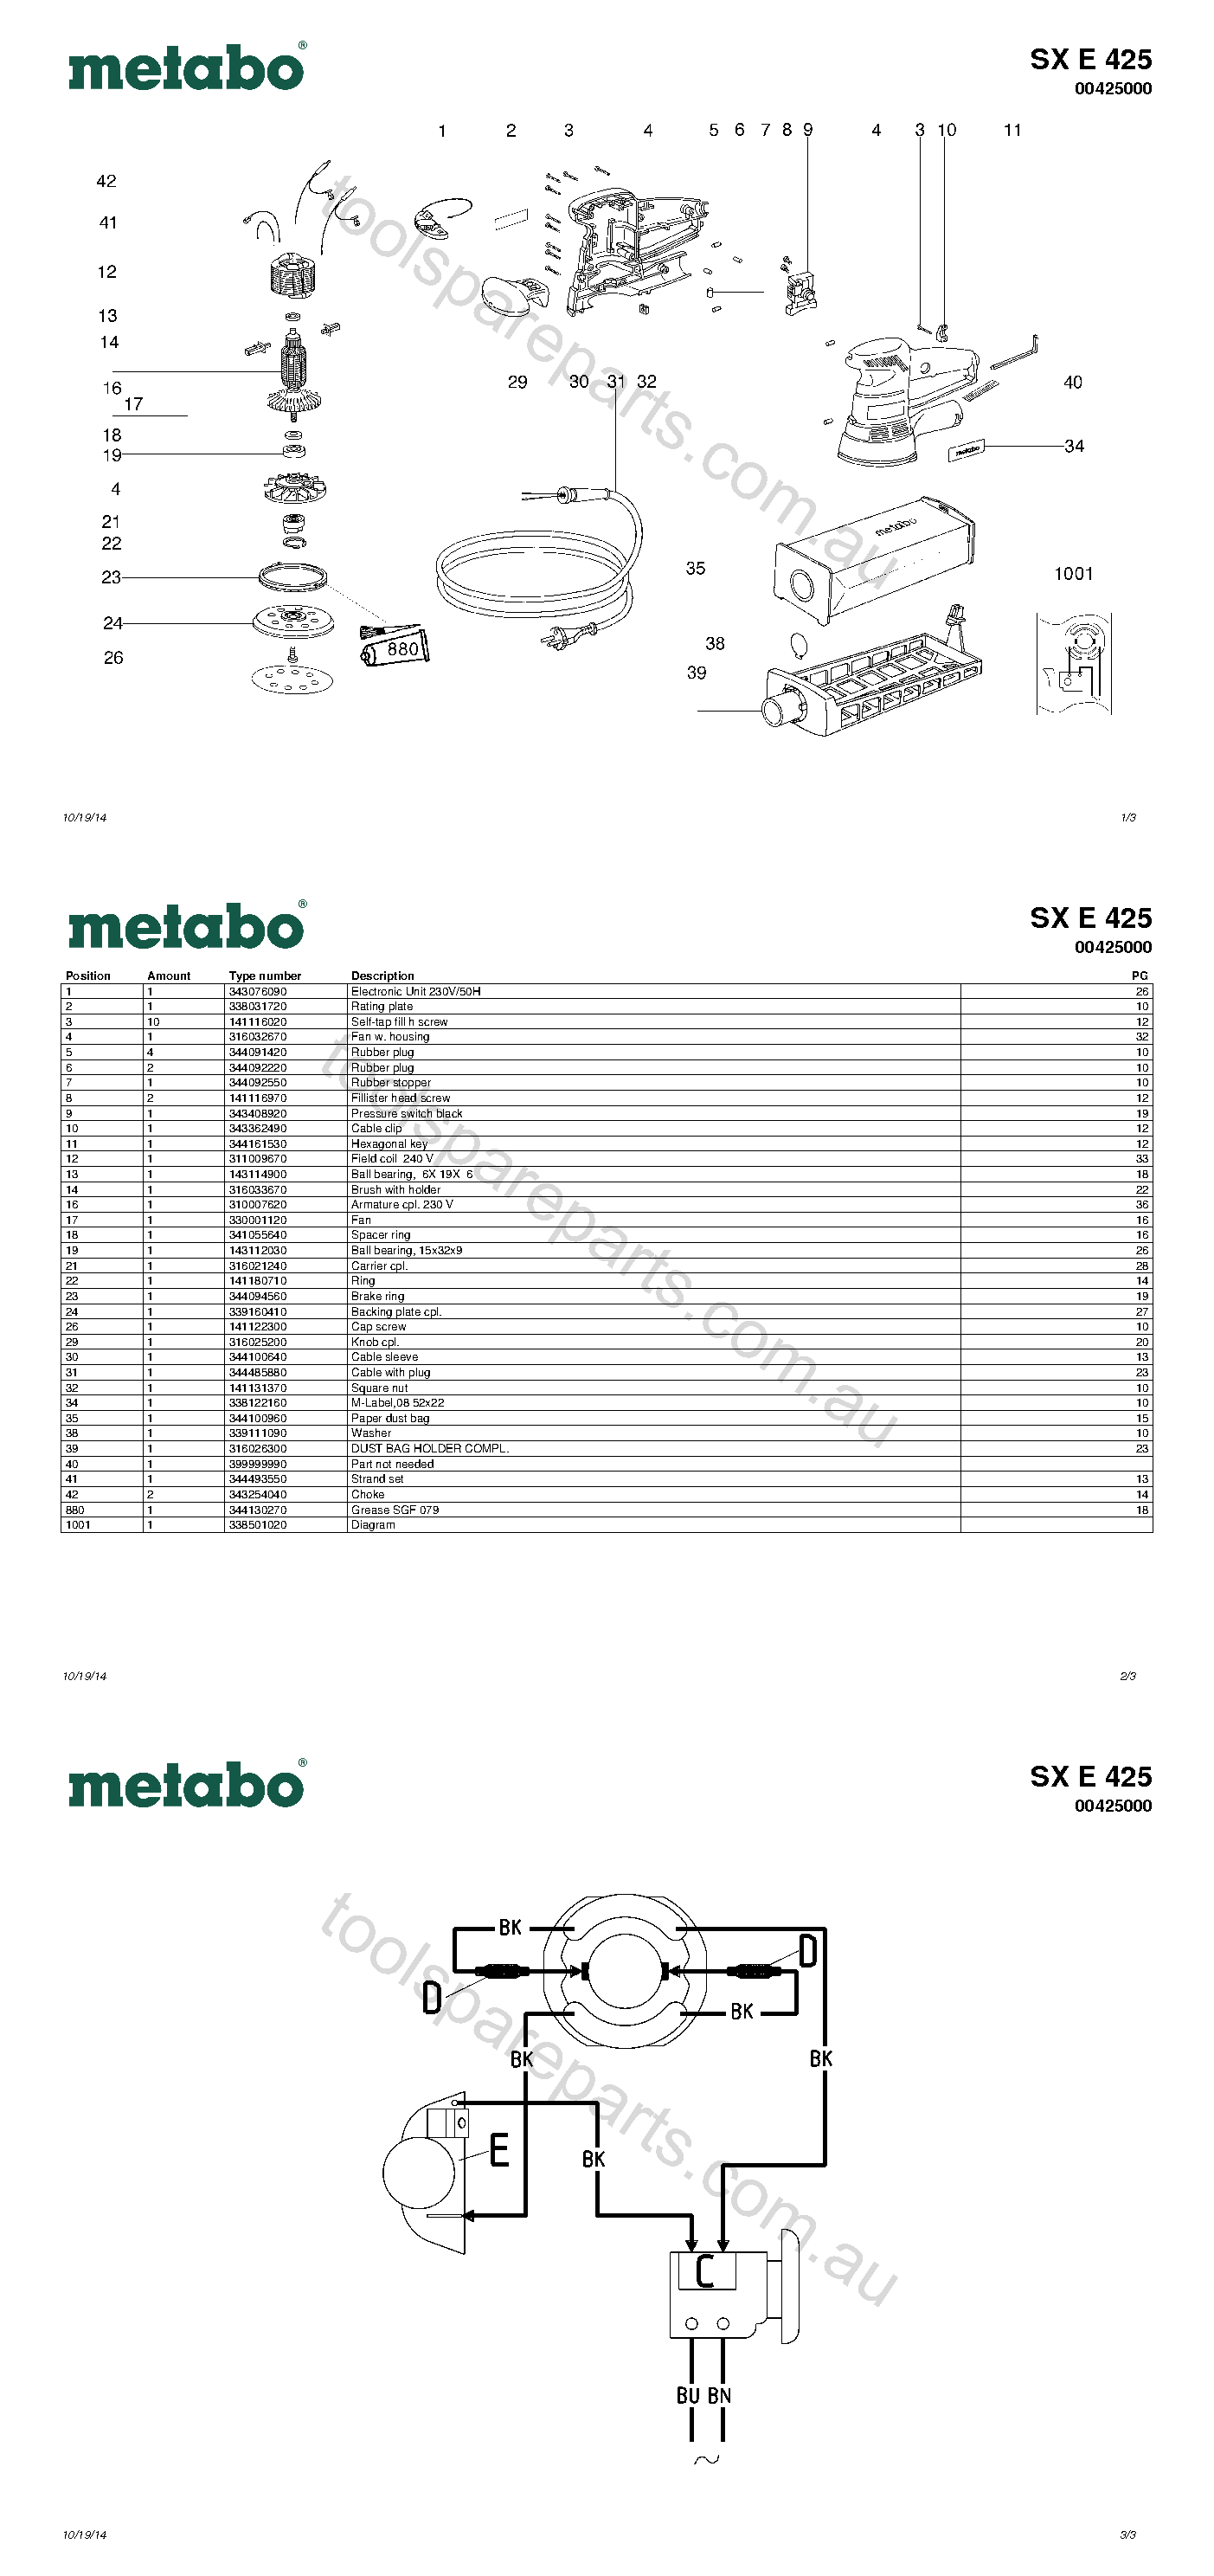 Metabo SX E 425 00425000  Diagram 1